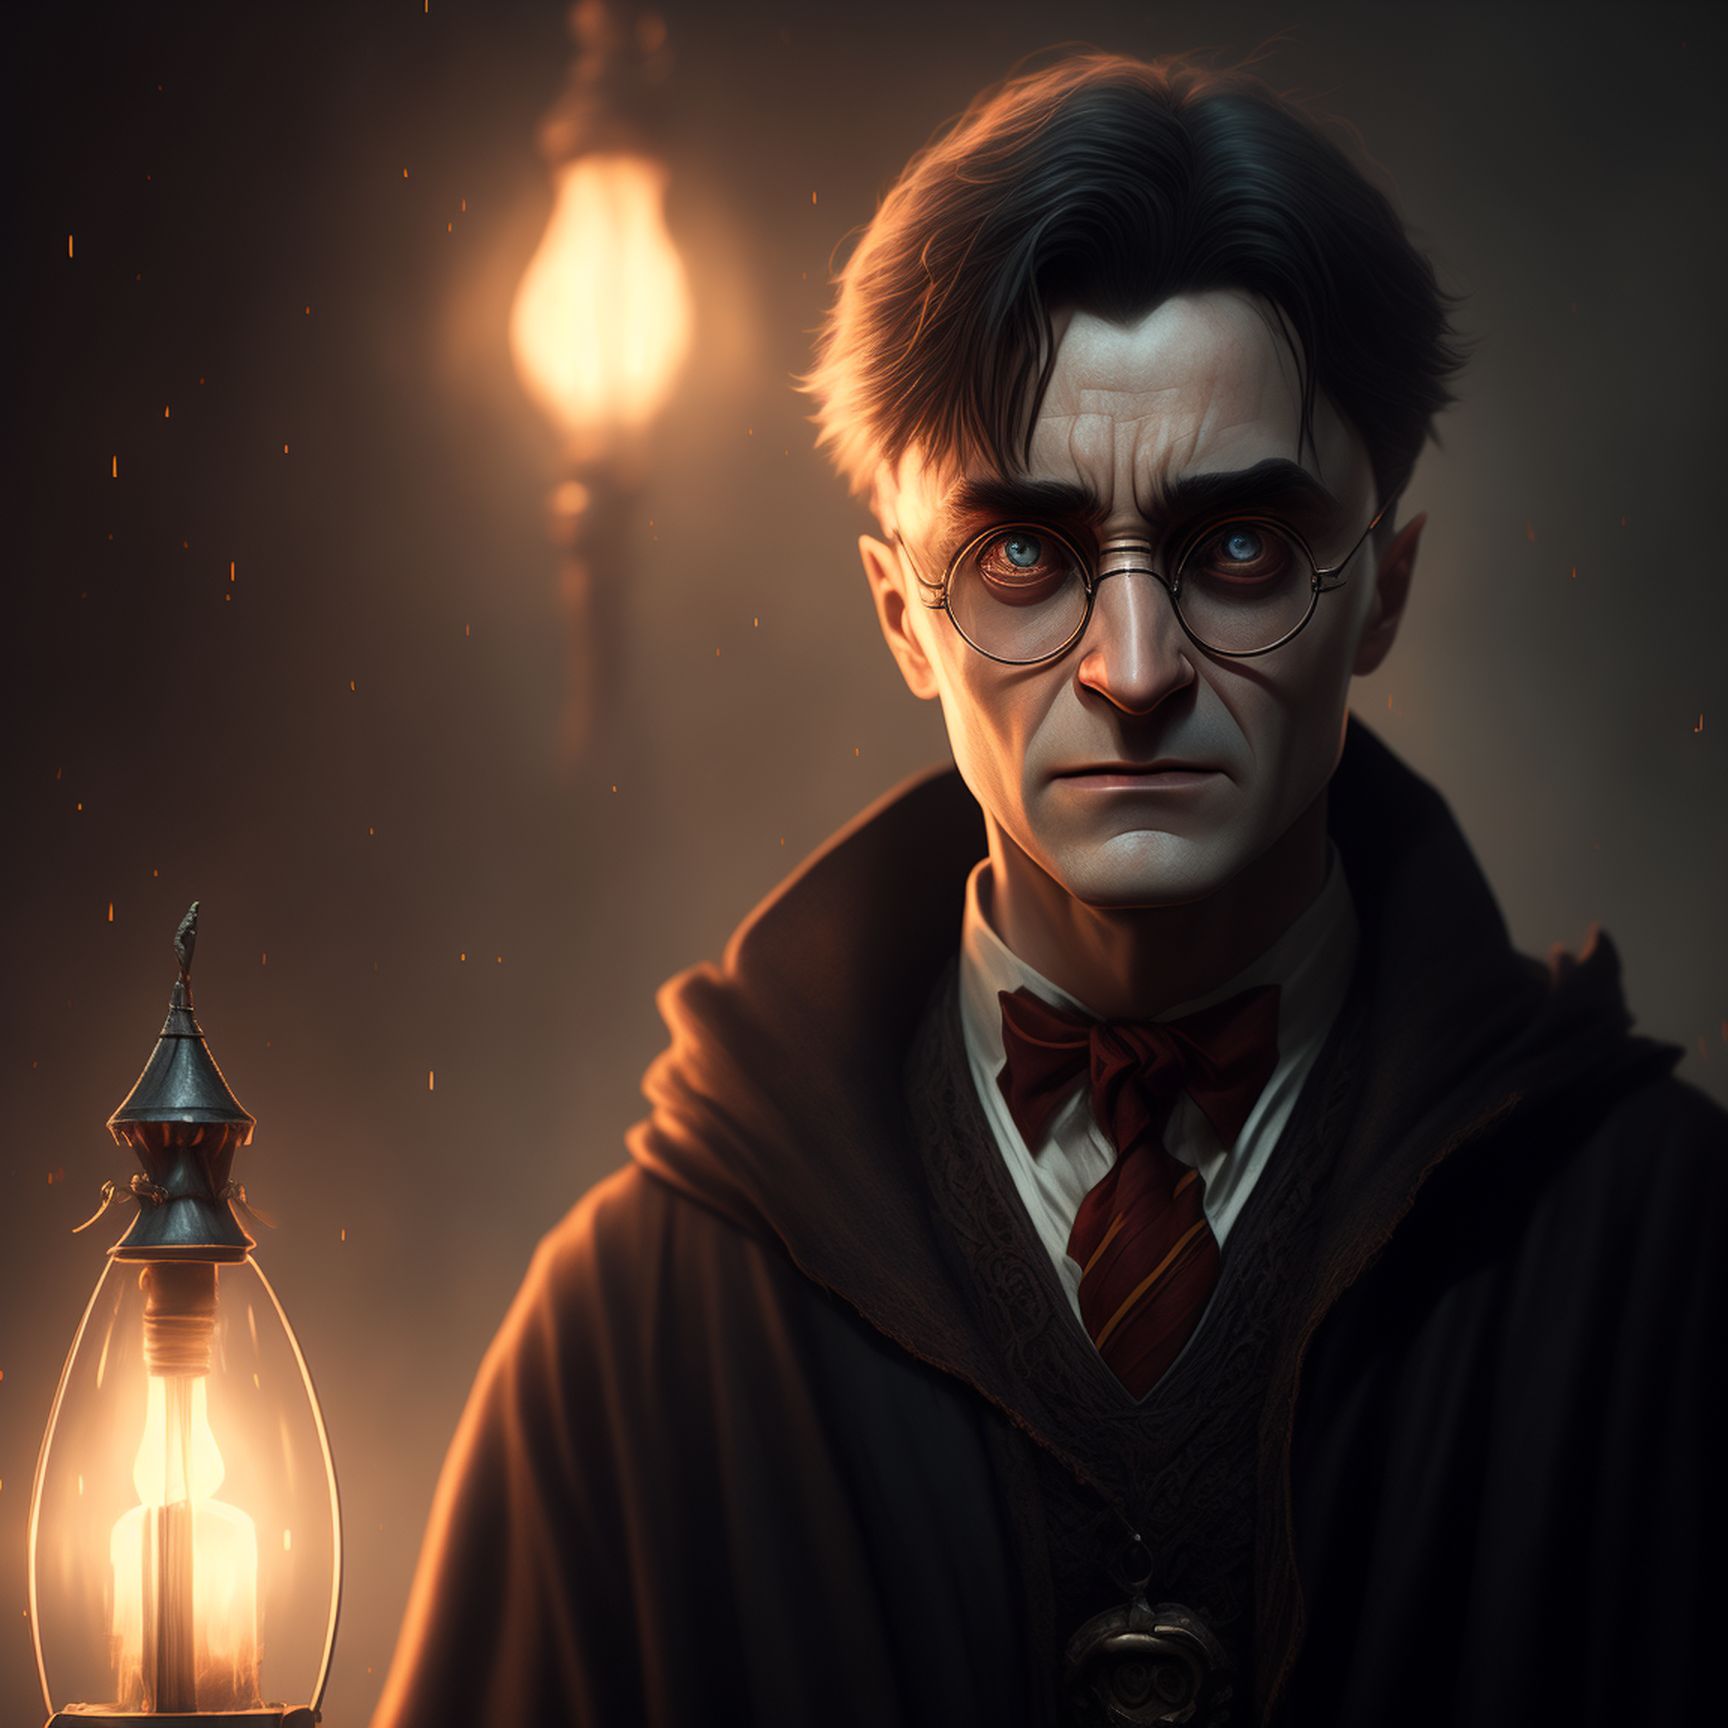 drafty-shrew643: Evil Harry Potter at Hogwarts, dark lights, Unreal Engine,  4k, cinematic render